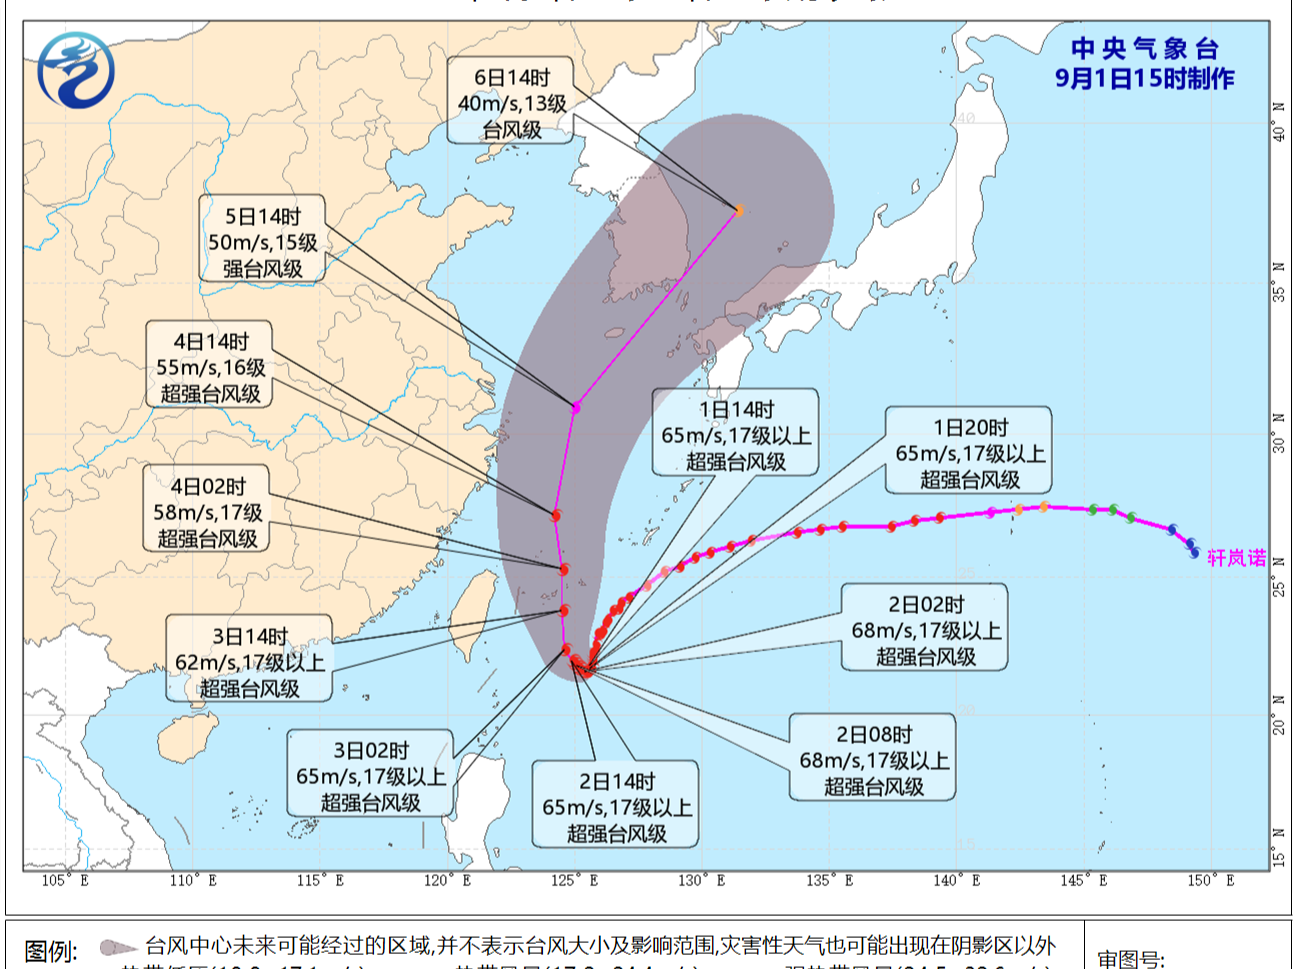 超强台风“轩岚诺”将严重影响东海等海域 近期深圳市天气炎热，请注意防暑补水